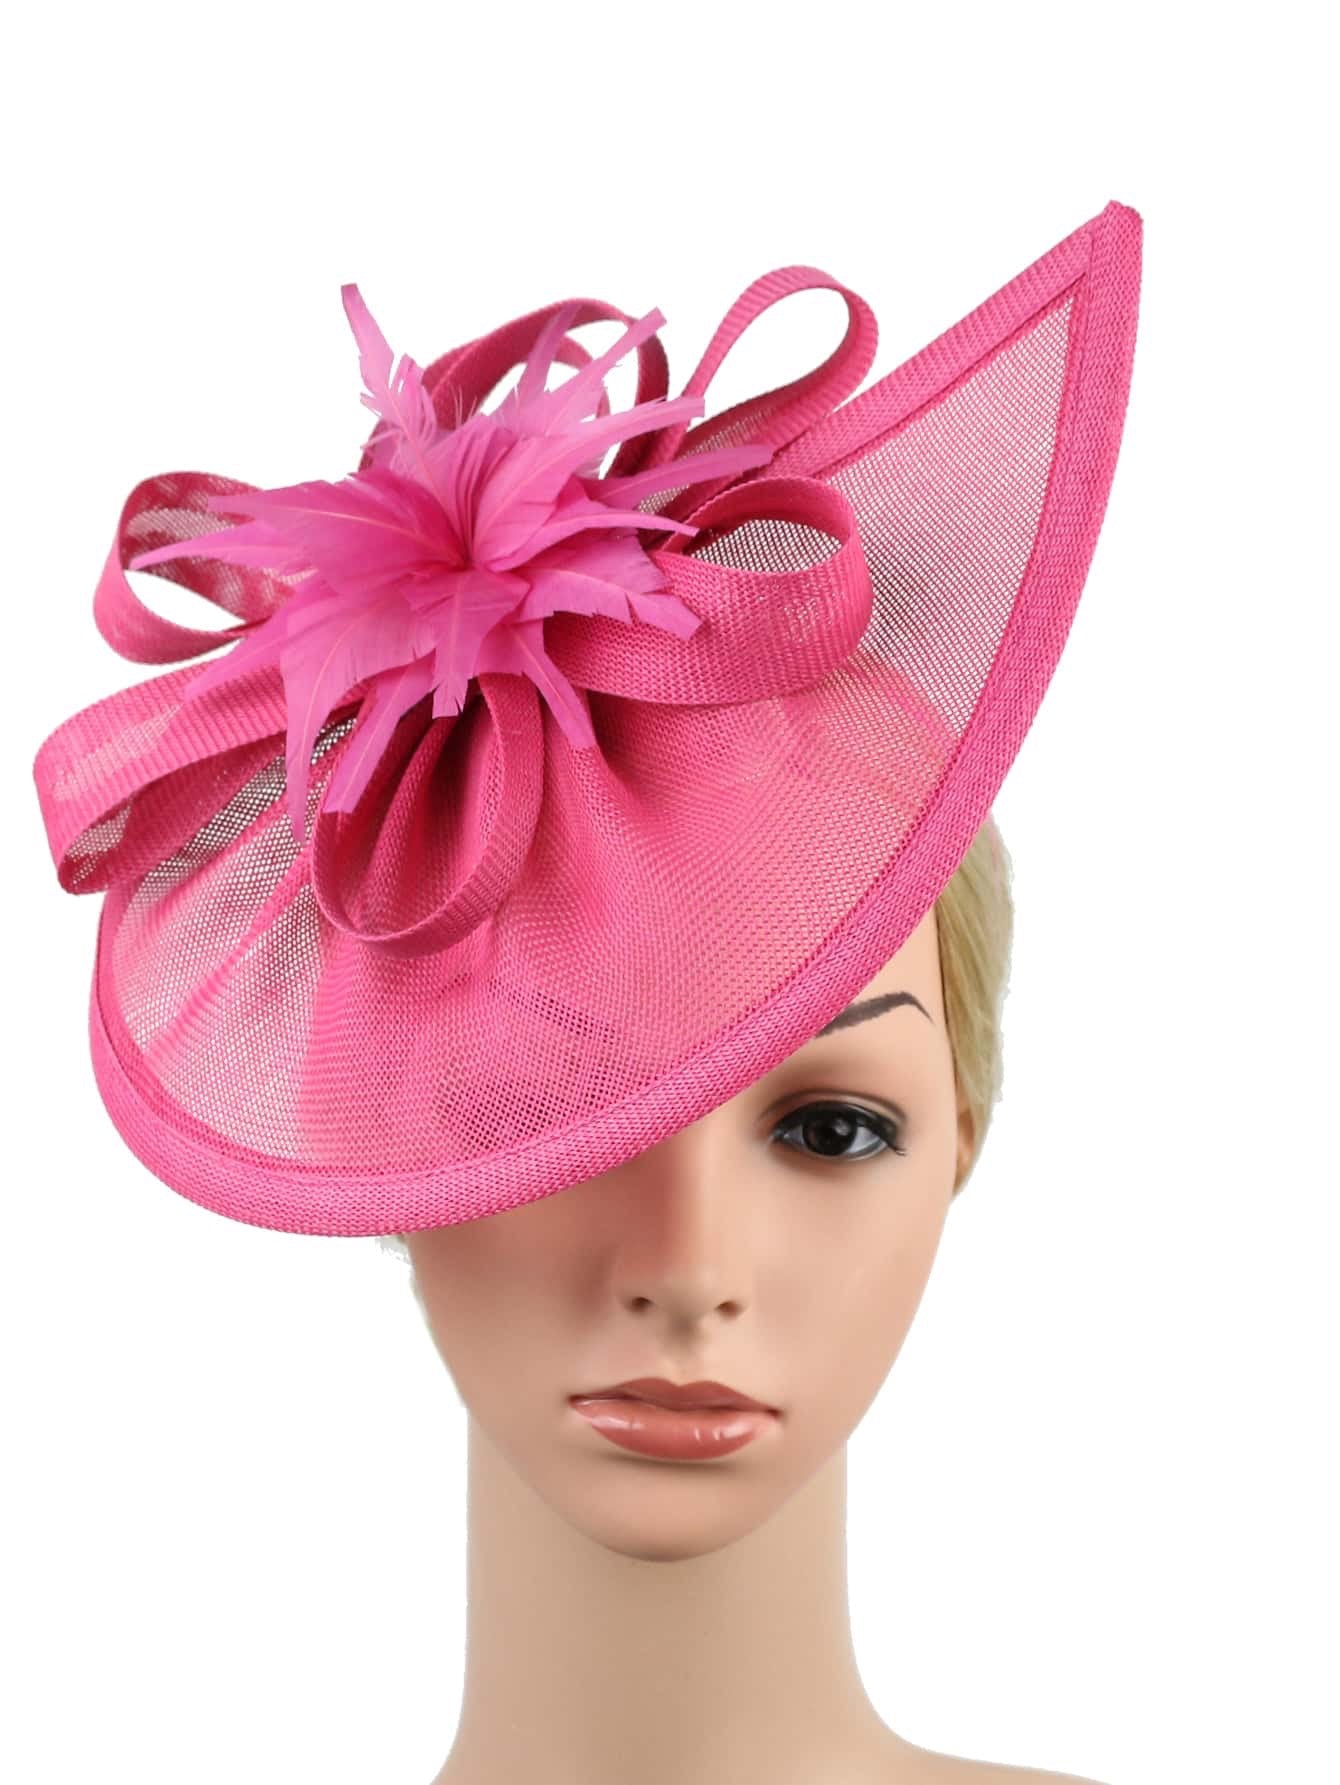 Vintage Inspired Fascinator Hat - Pink